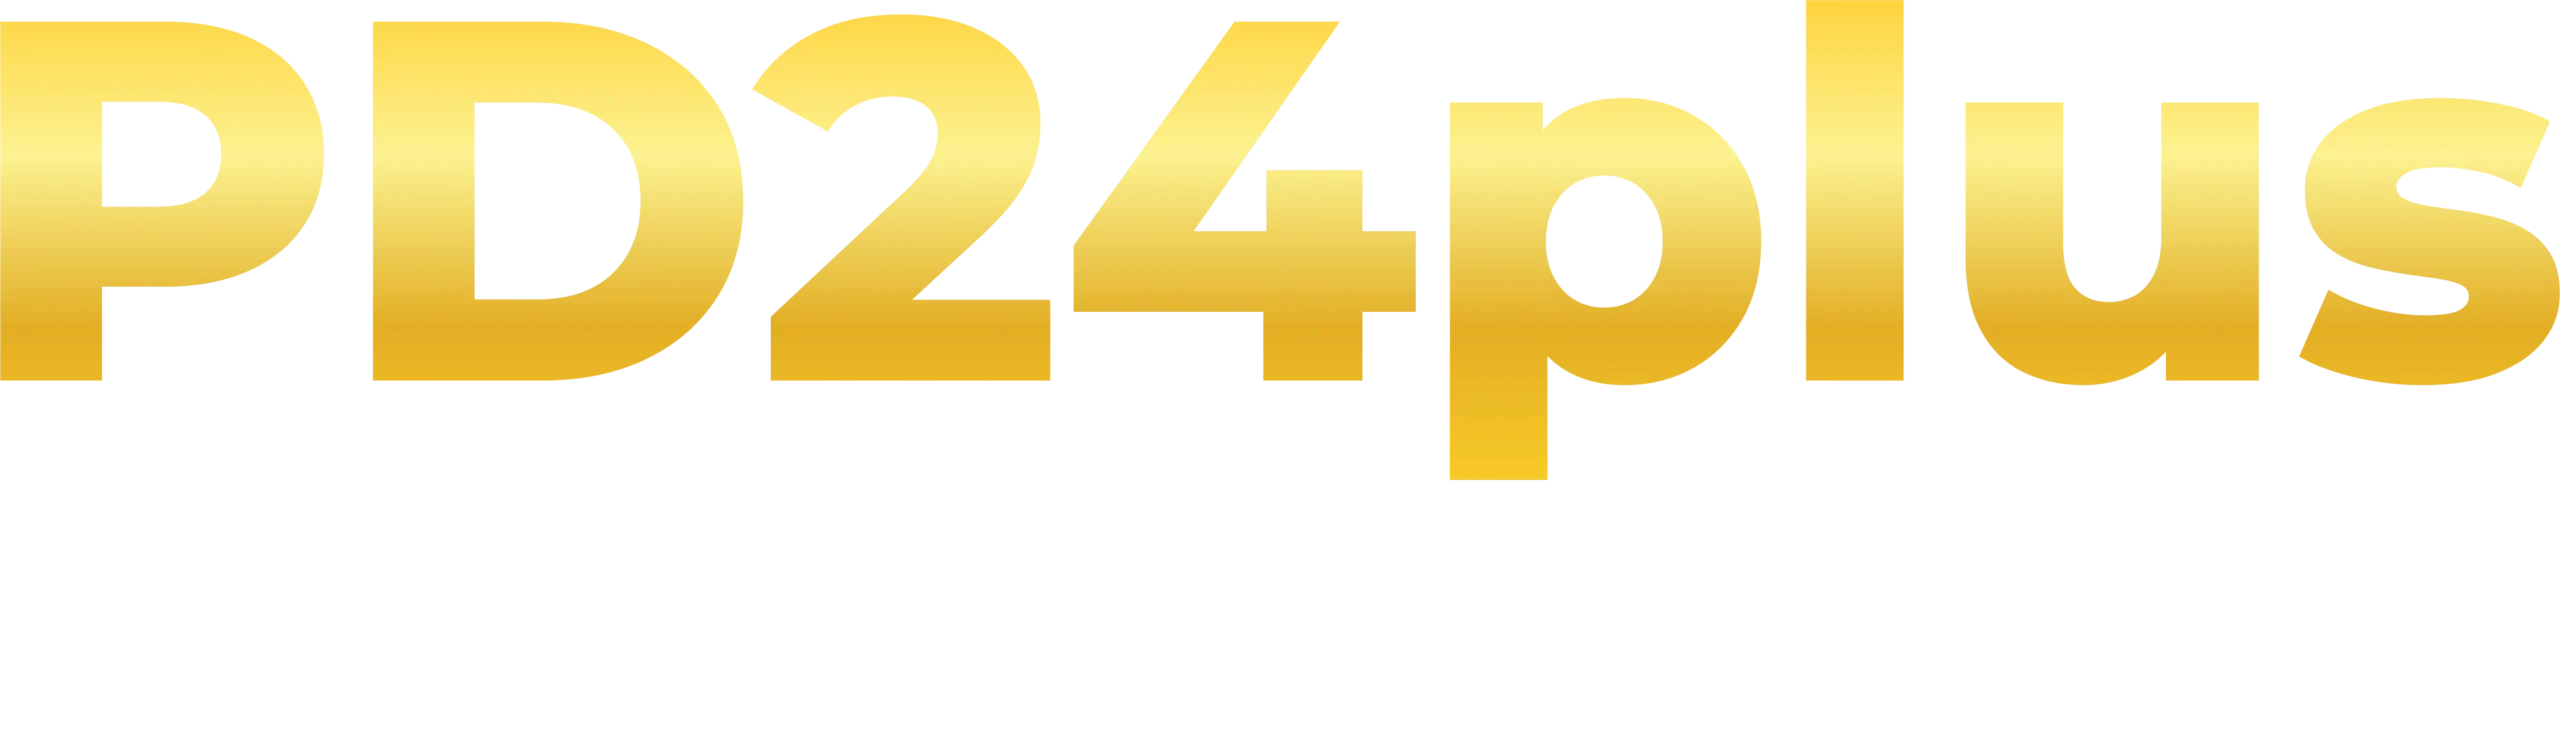 pd24plus logo